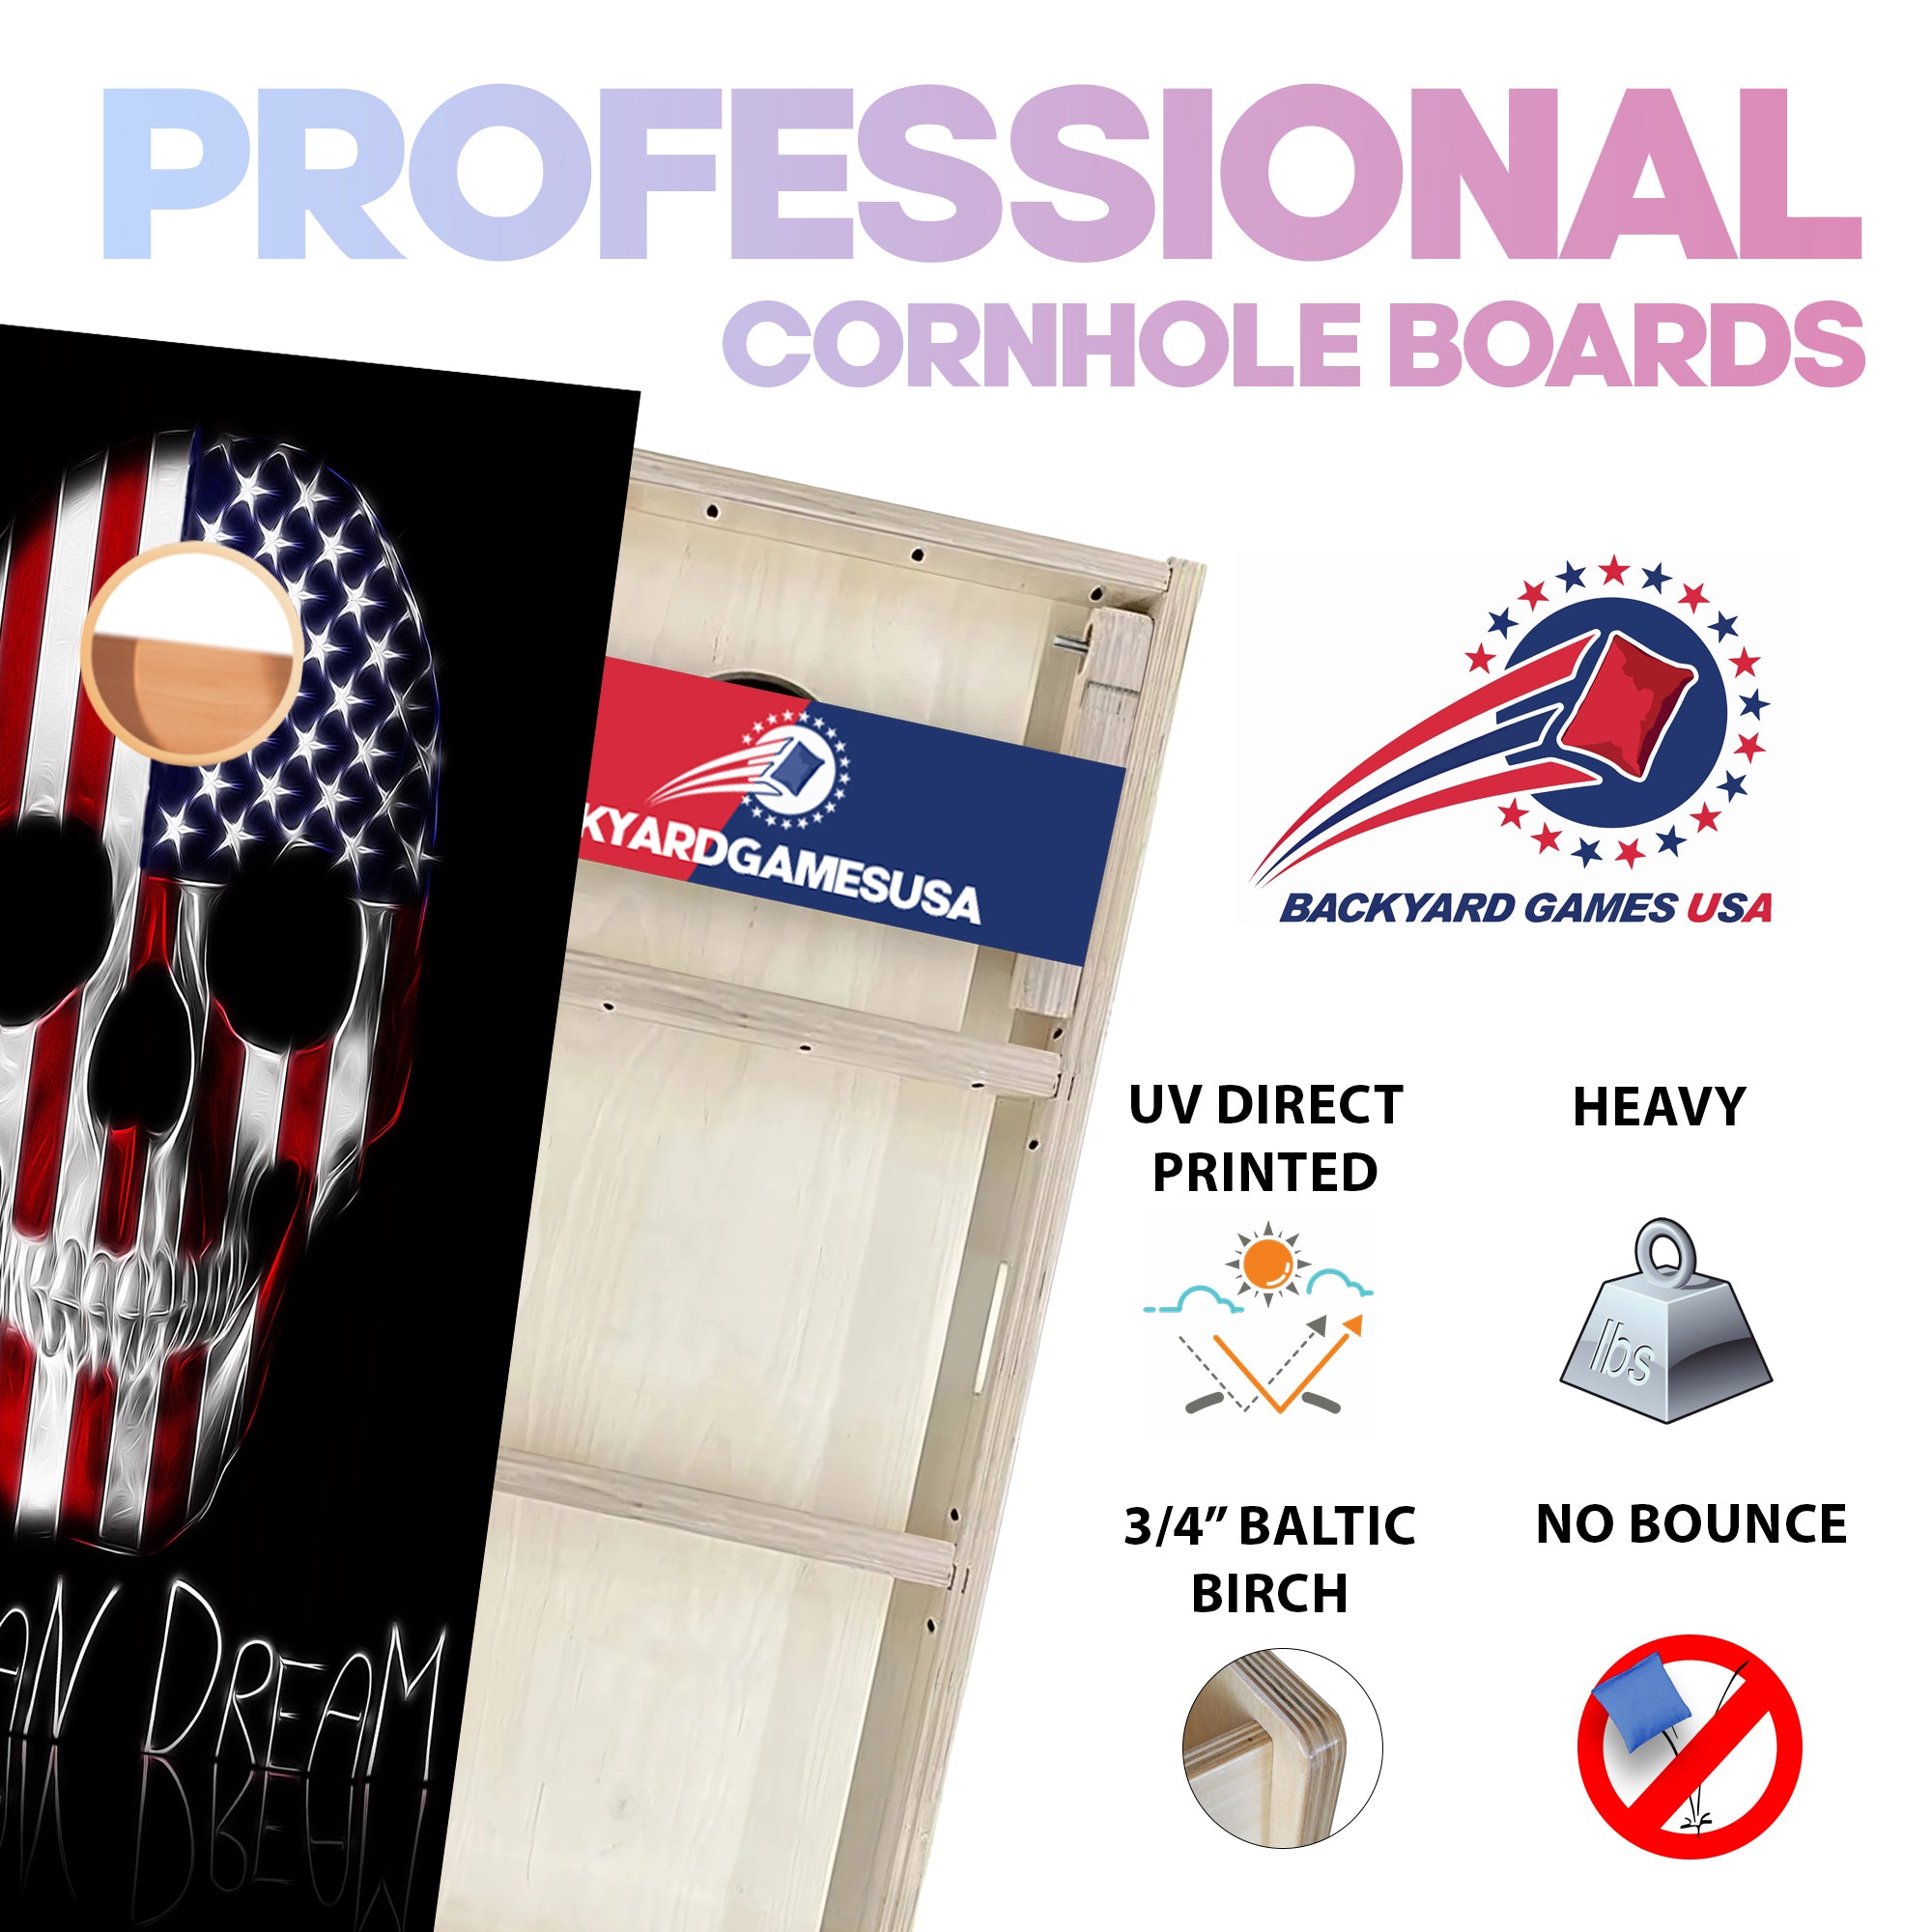 American Dream Professional Cornhole Boards